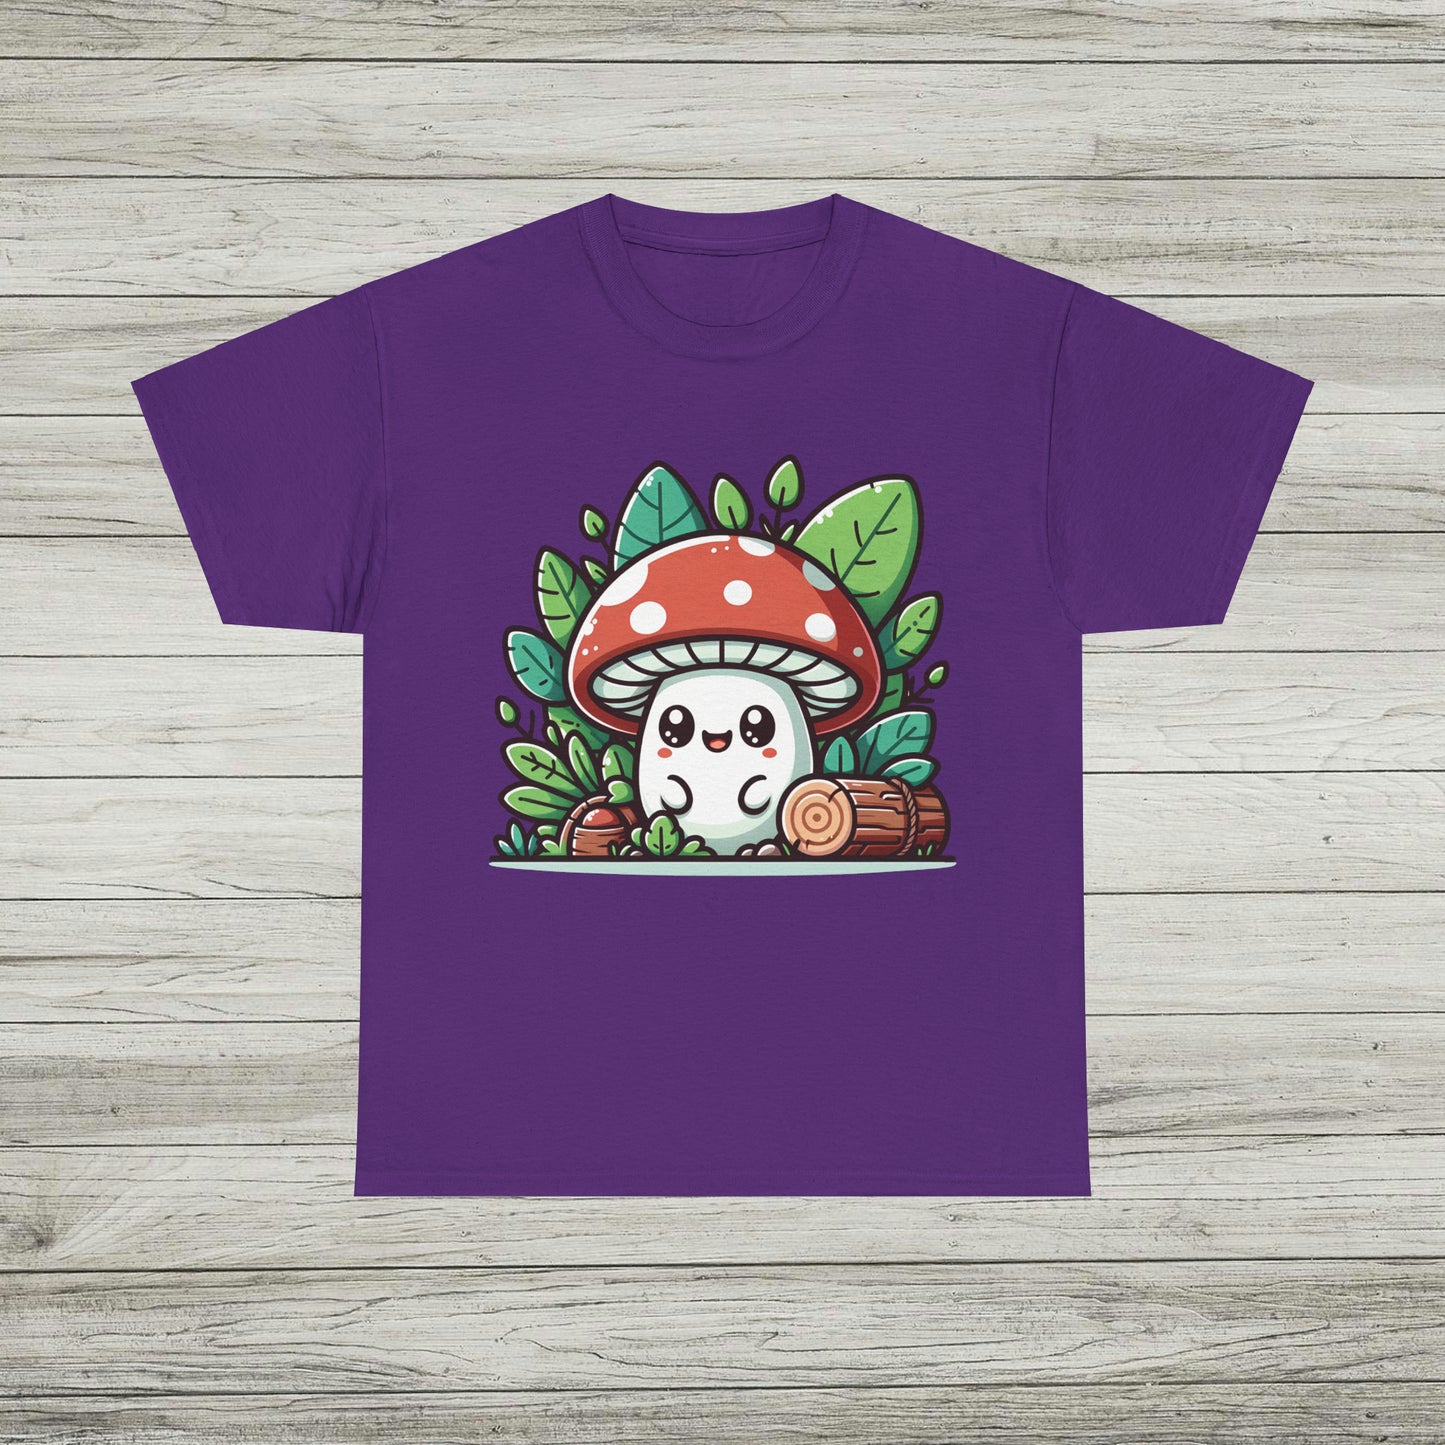 Happy Mushroom T-Shirt, Shroom in the Forest TShirt, Retro Hippie Fungi Tee